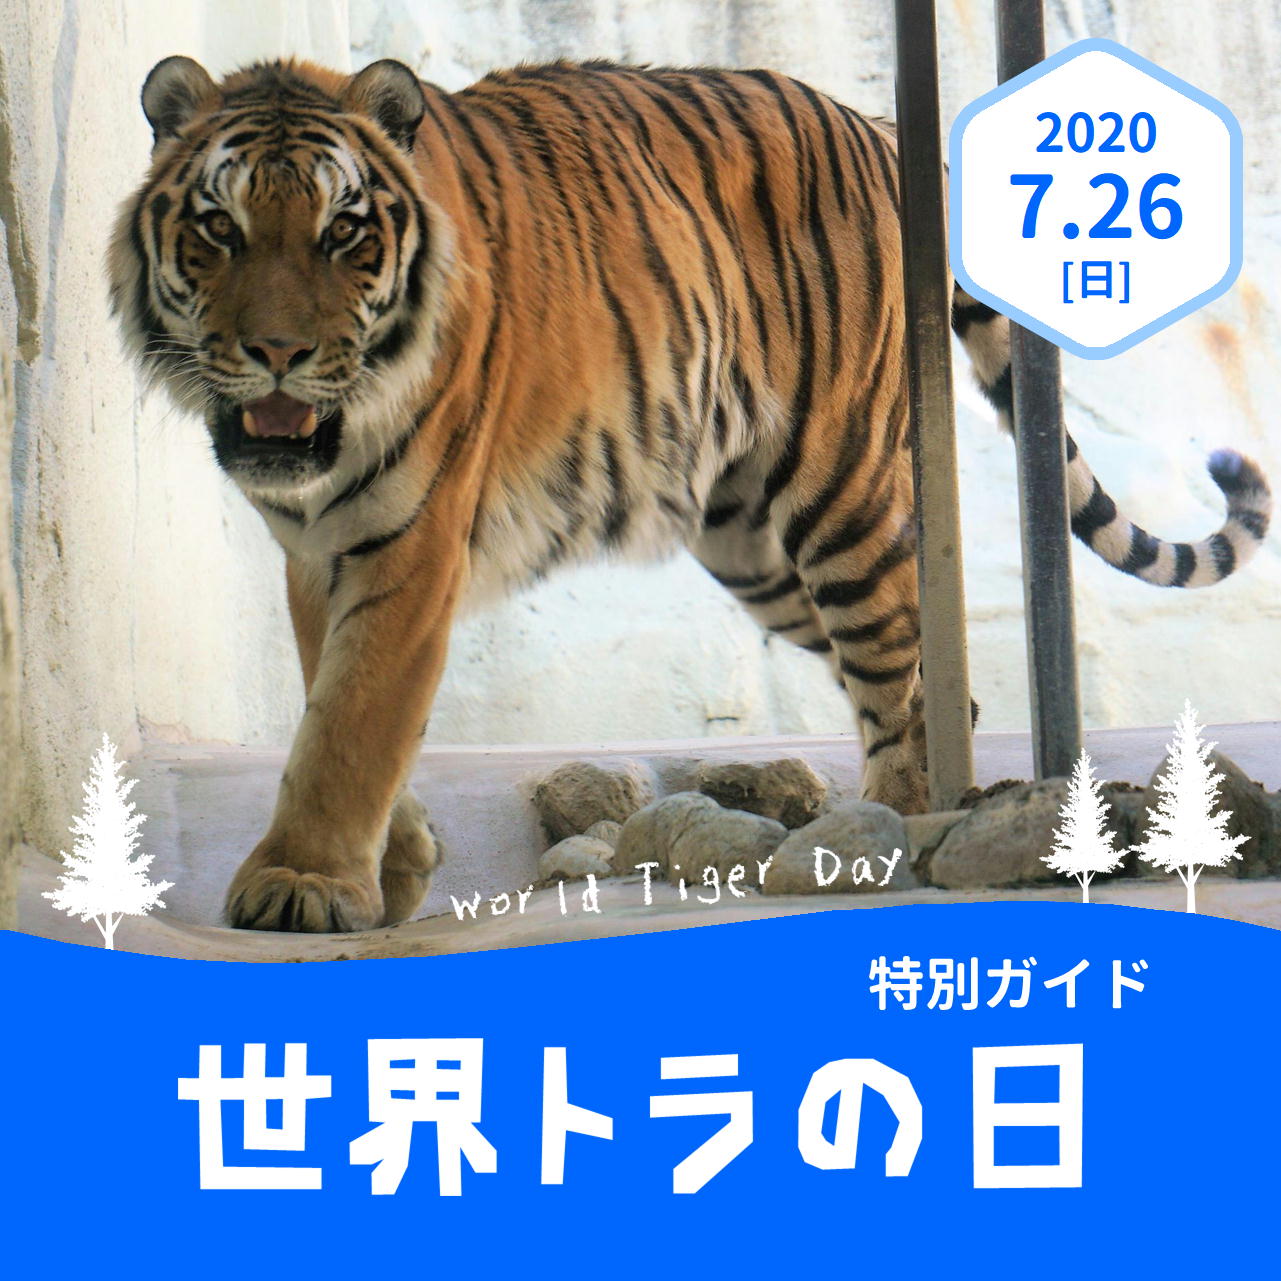 福岡市動物園 世界トラの日 特別ガイドを開催します